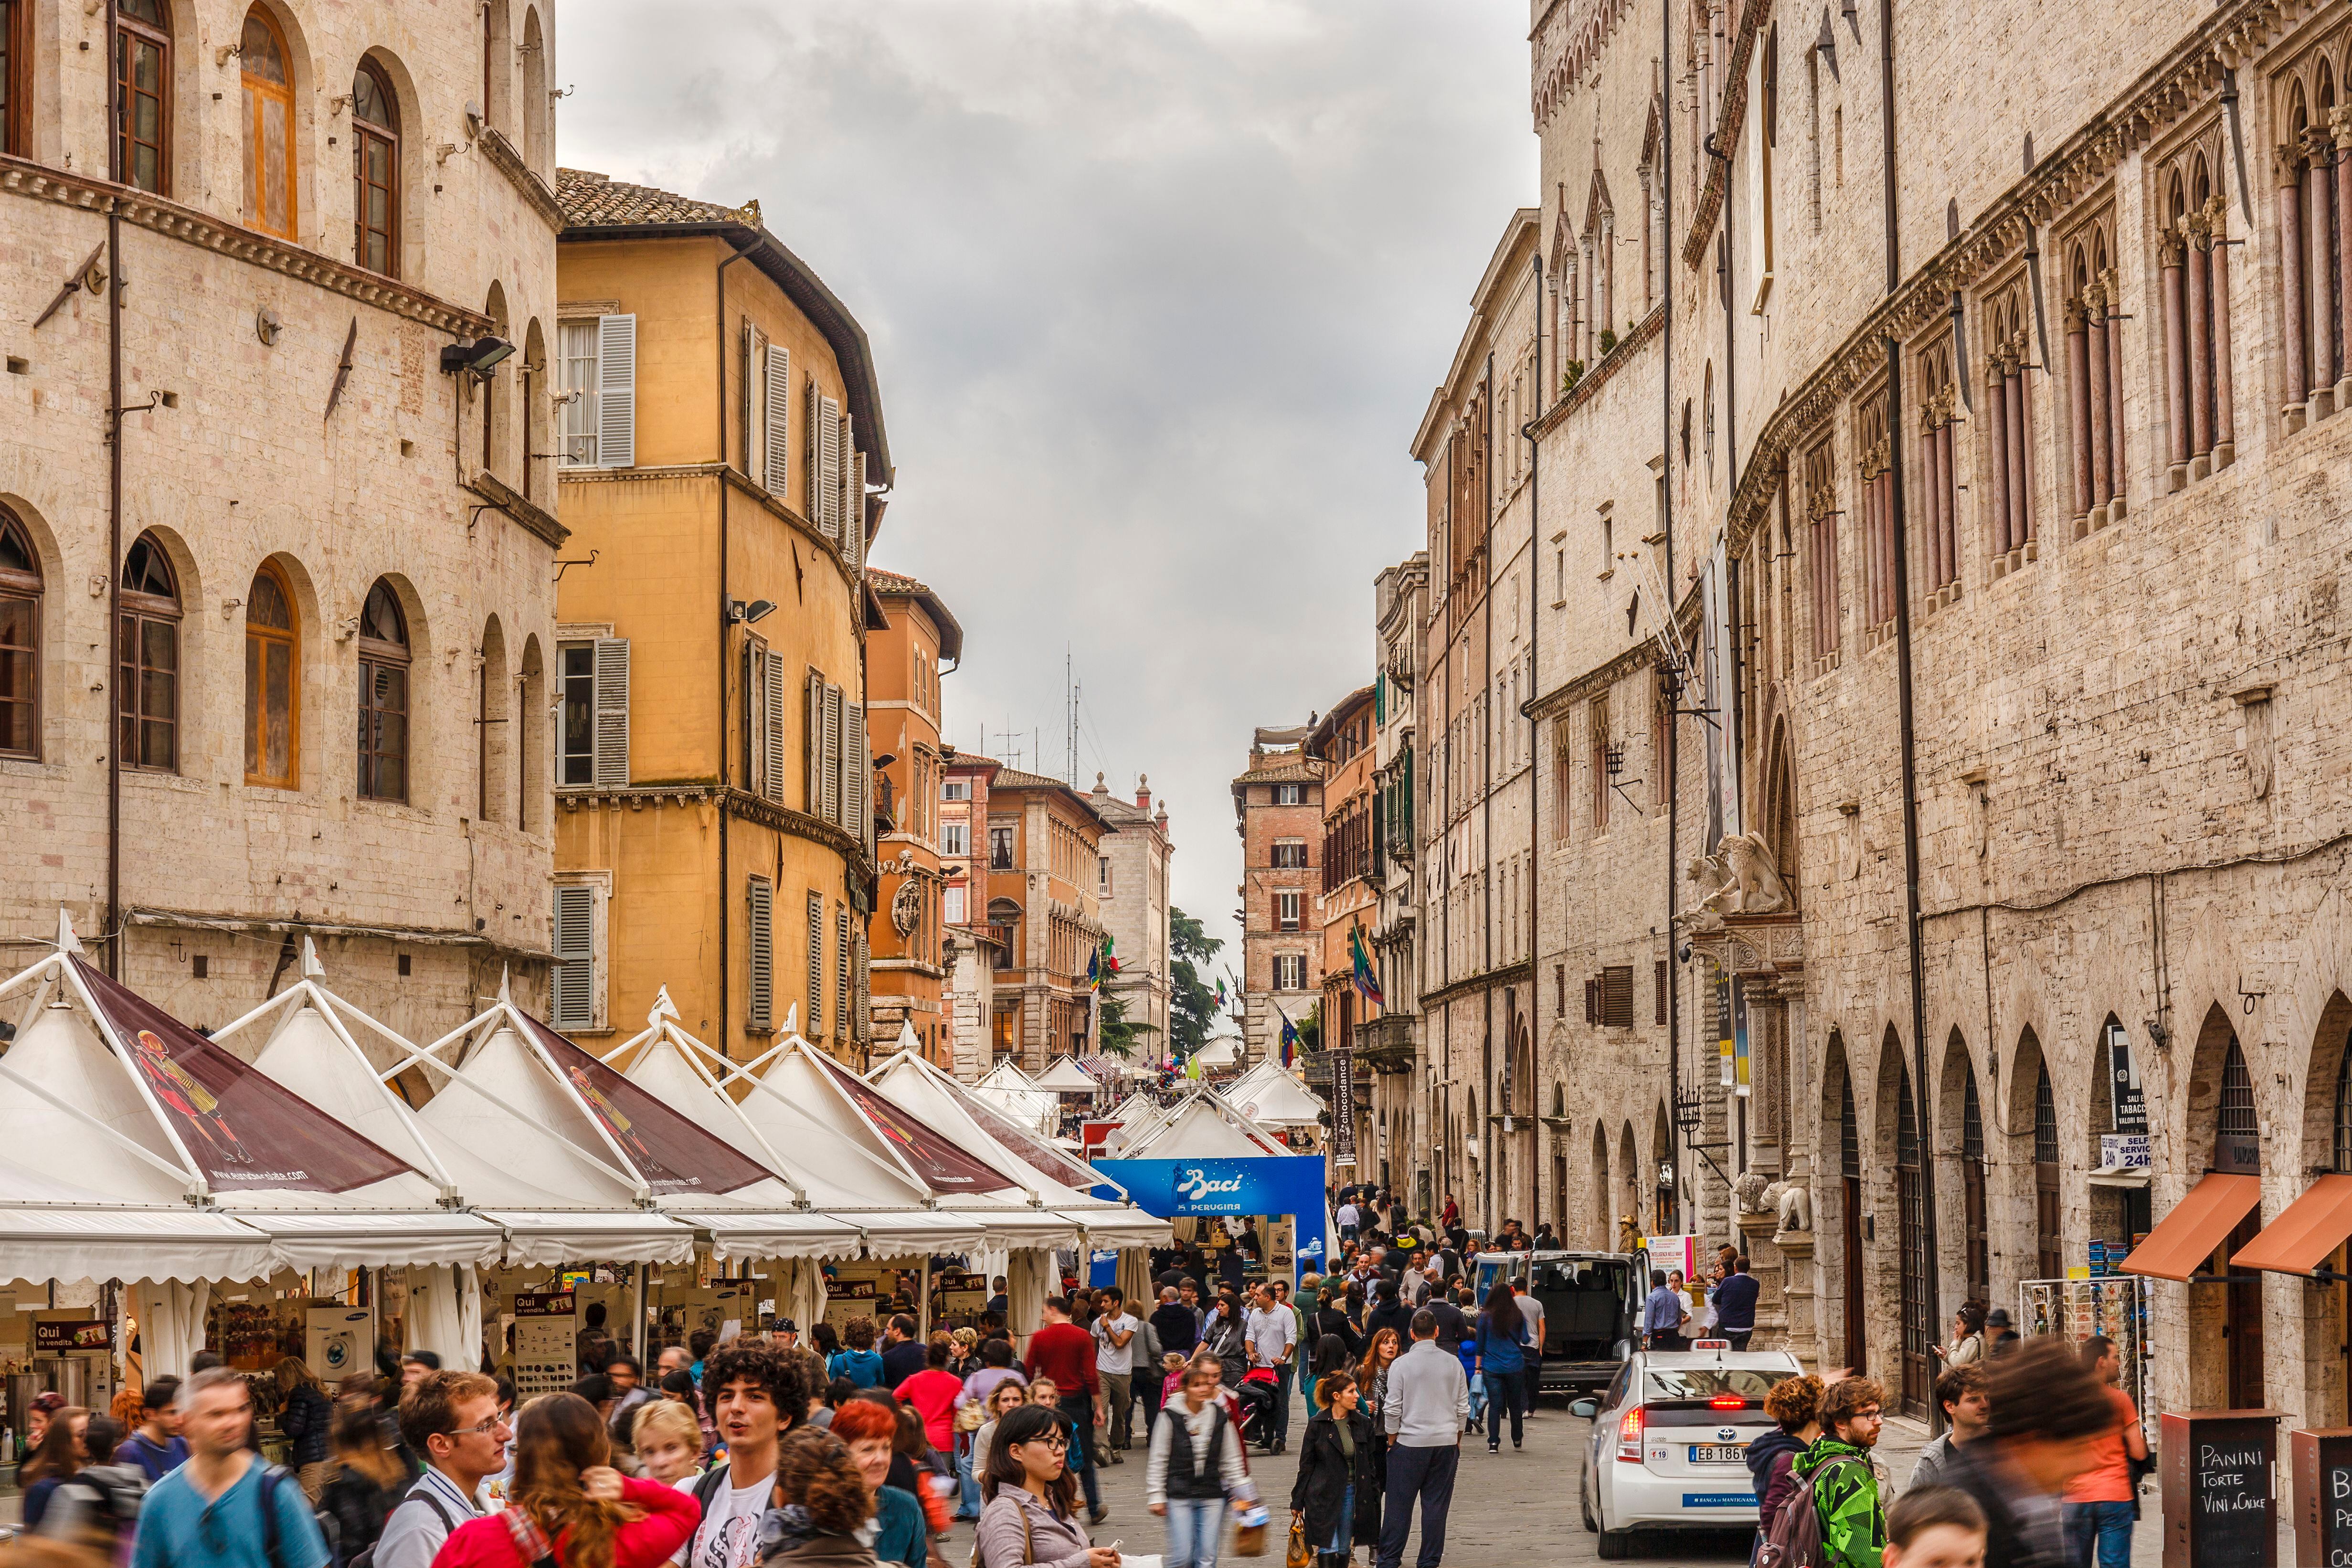 Una de las calles de Perugia durante el festival anual dedicado al chocolate que se celebra todos los años.